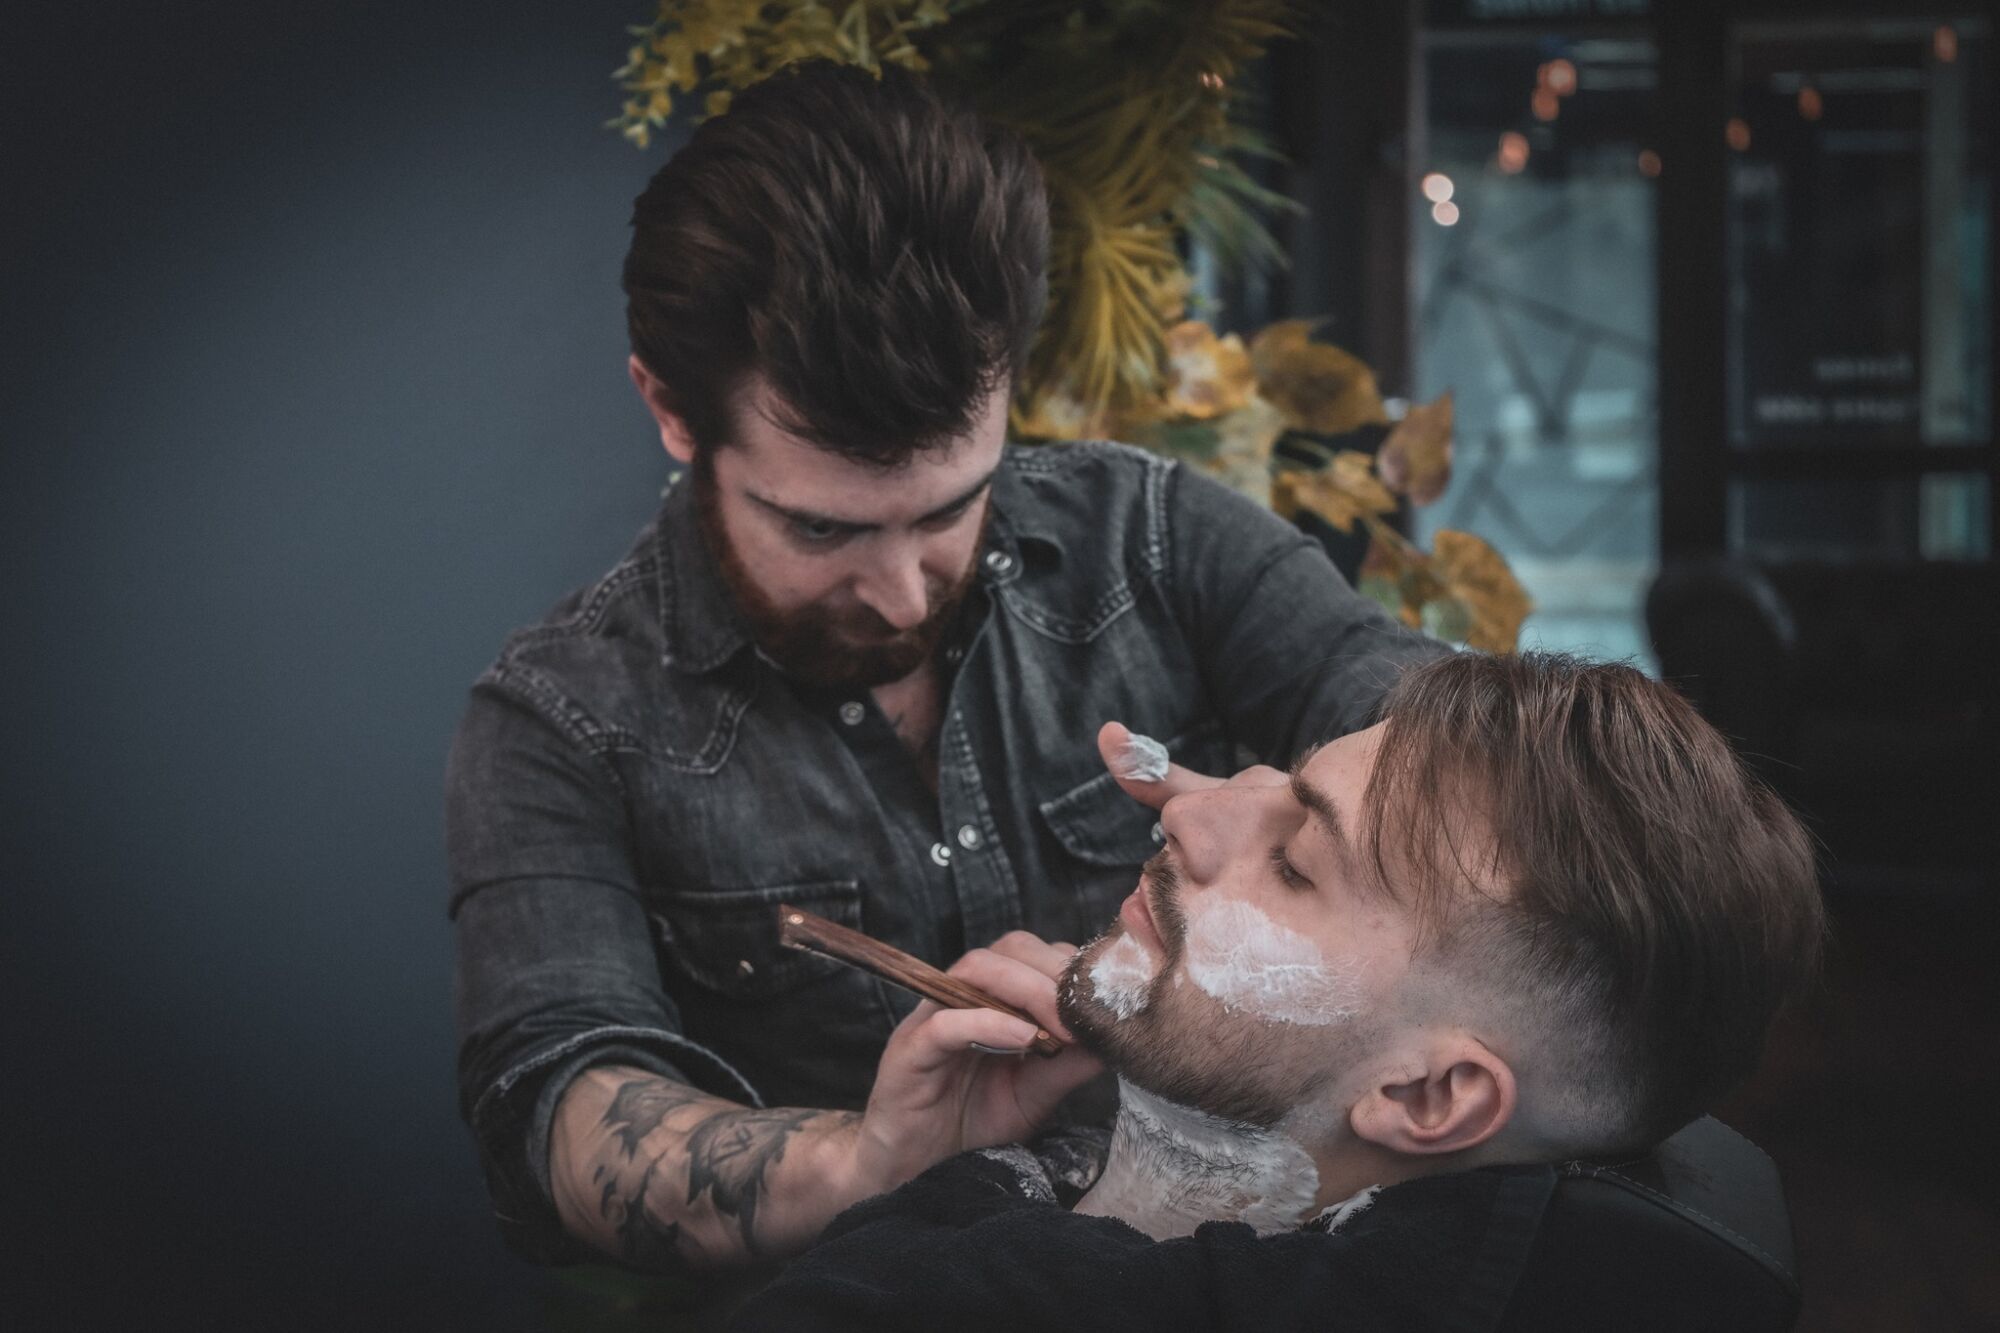 Barbier : rasage, modelage et soin de votre barbe à Colmar proche de Sélestat Cernay